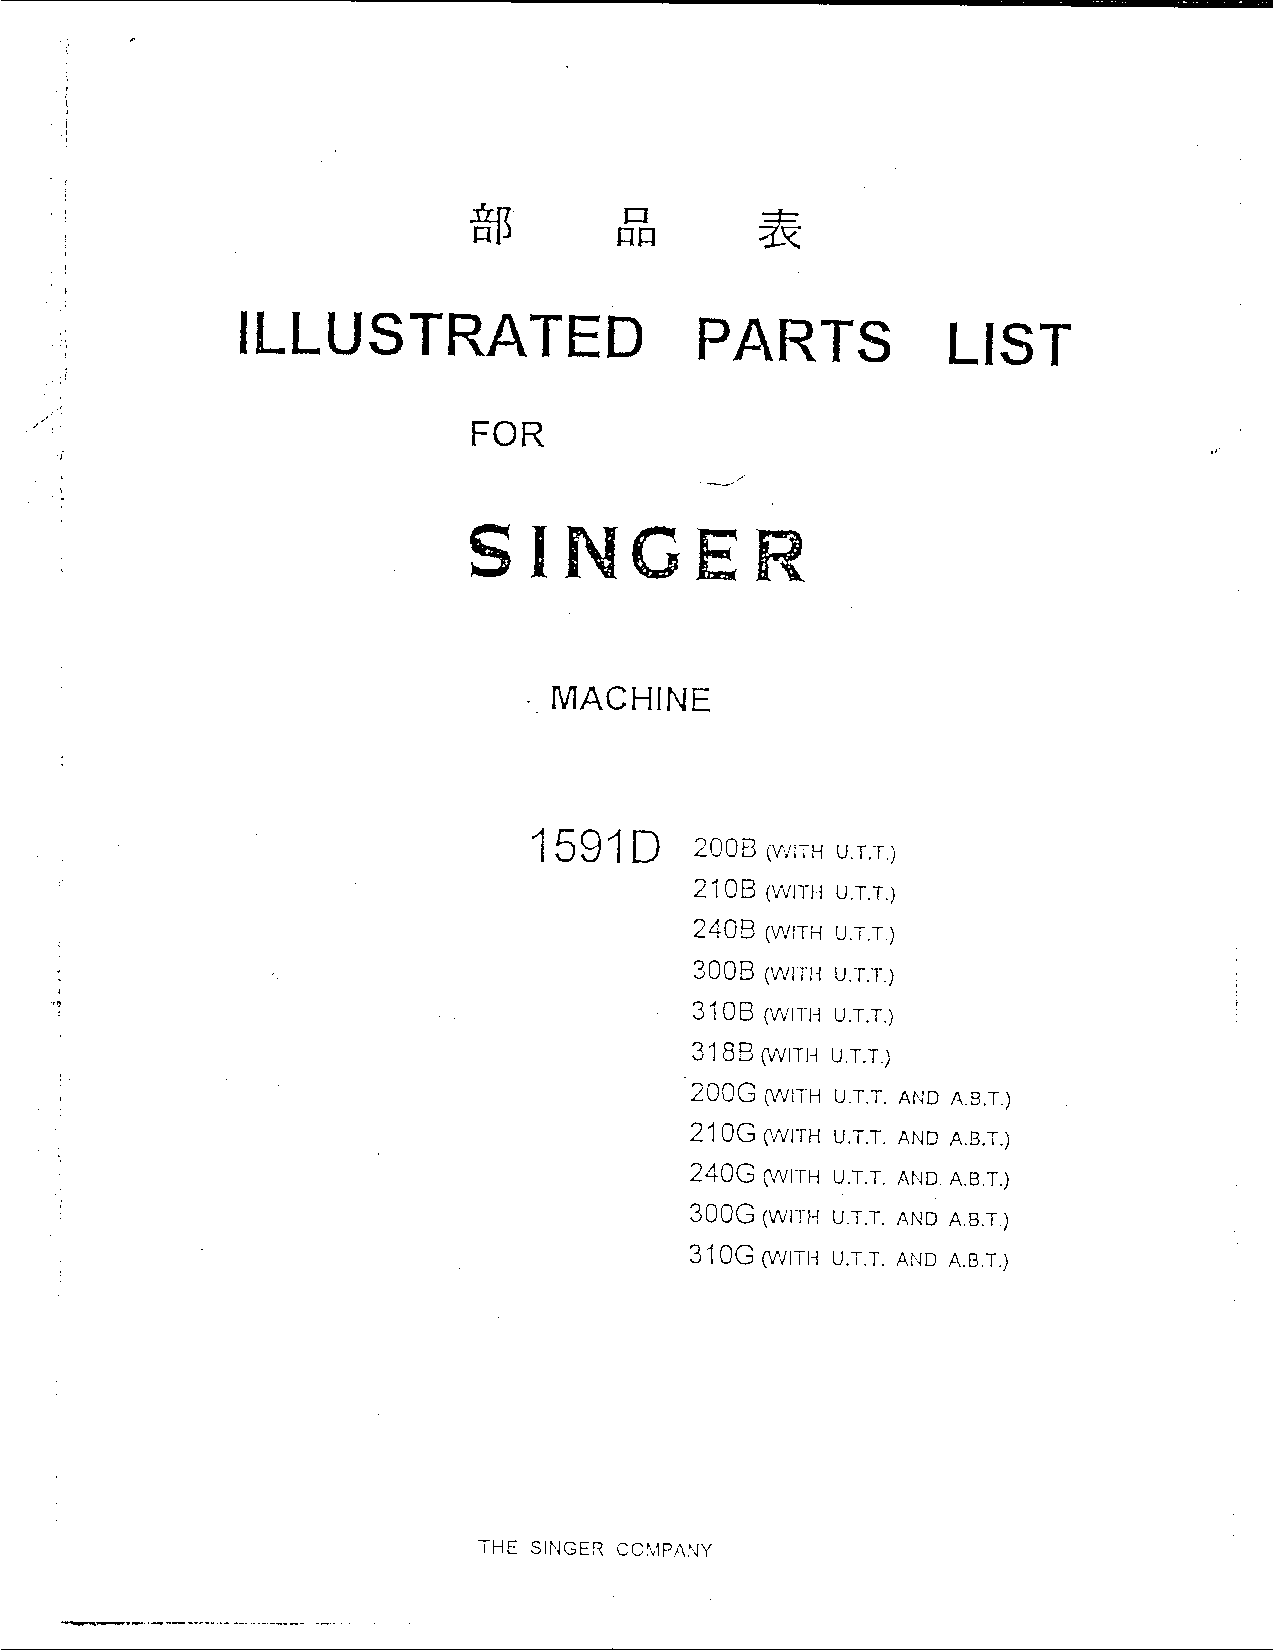 Singer 210G, 240B, 210B, 240G, 200G User Manual